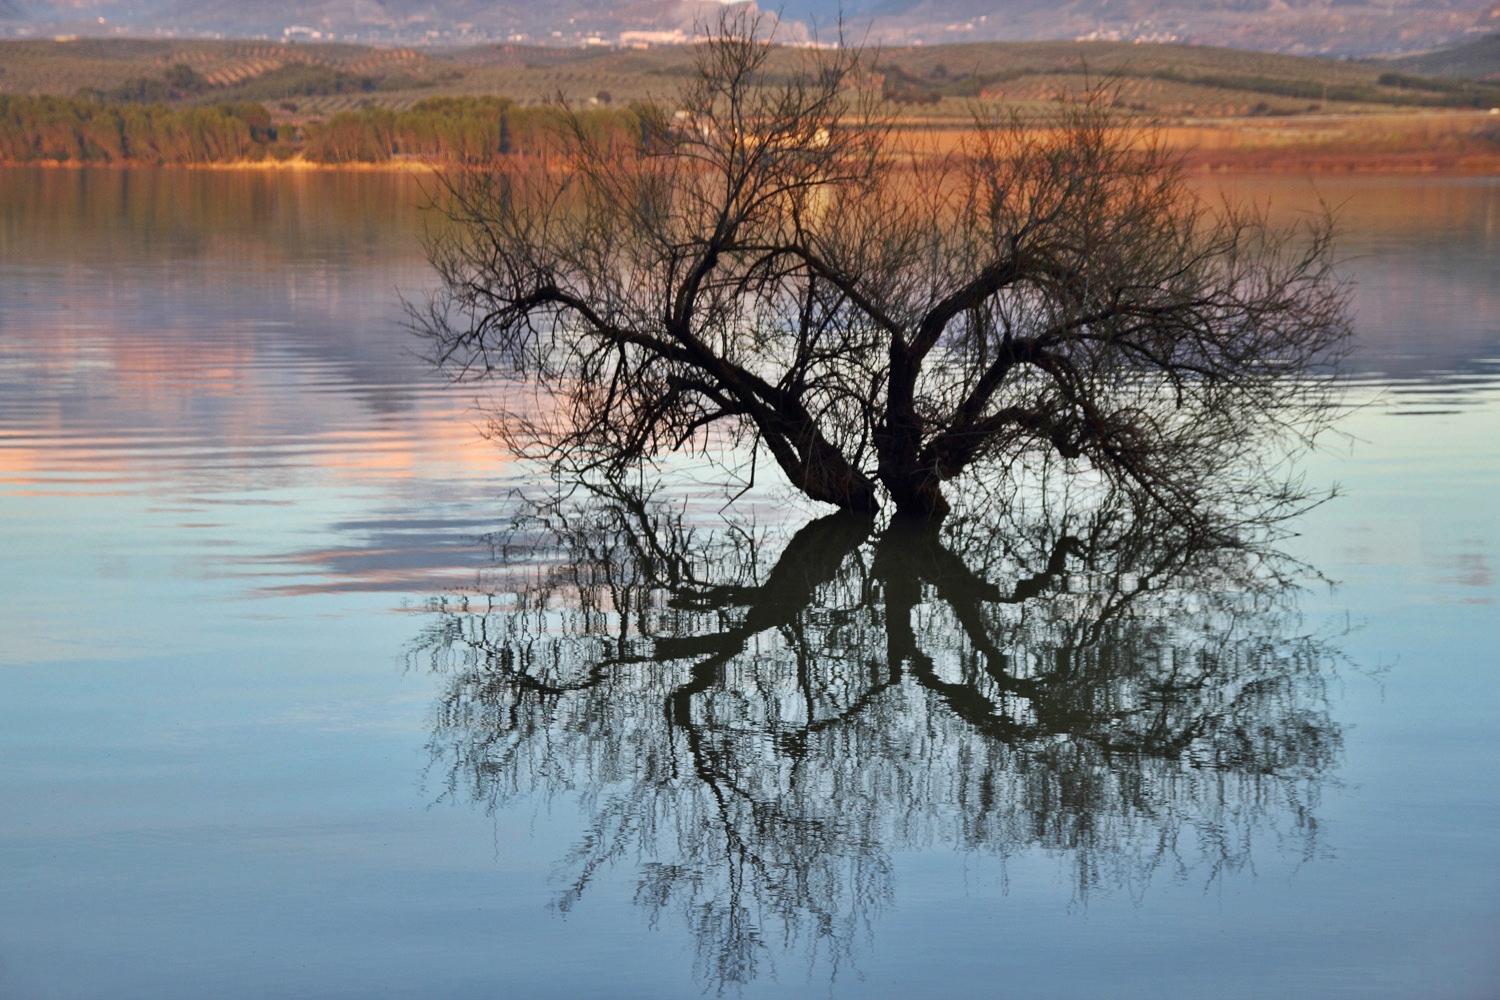 "The Water Tree" - Pantano de Cubillas, Granada - L07718